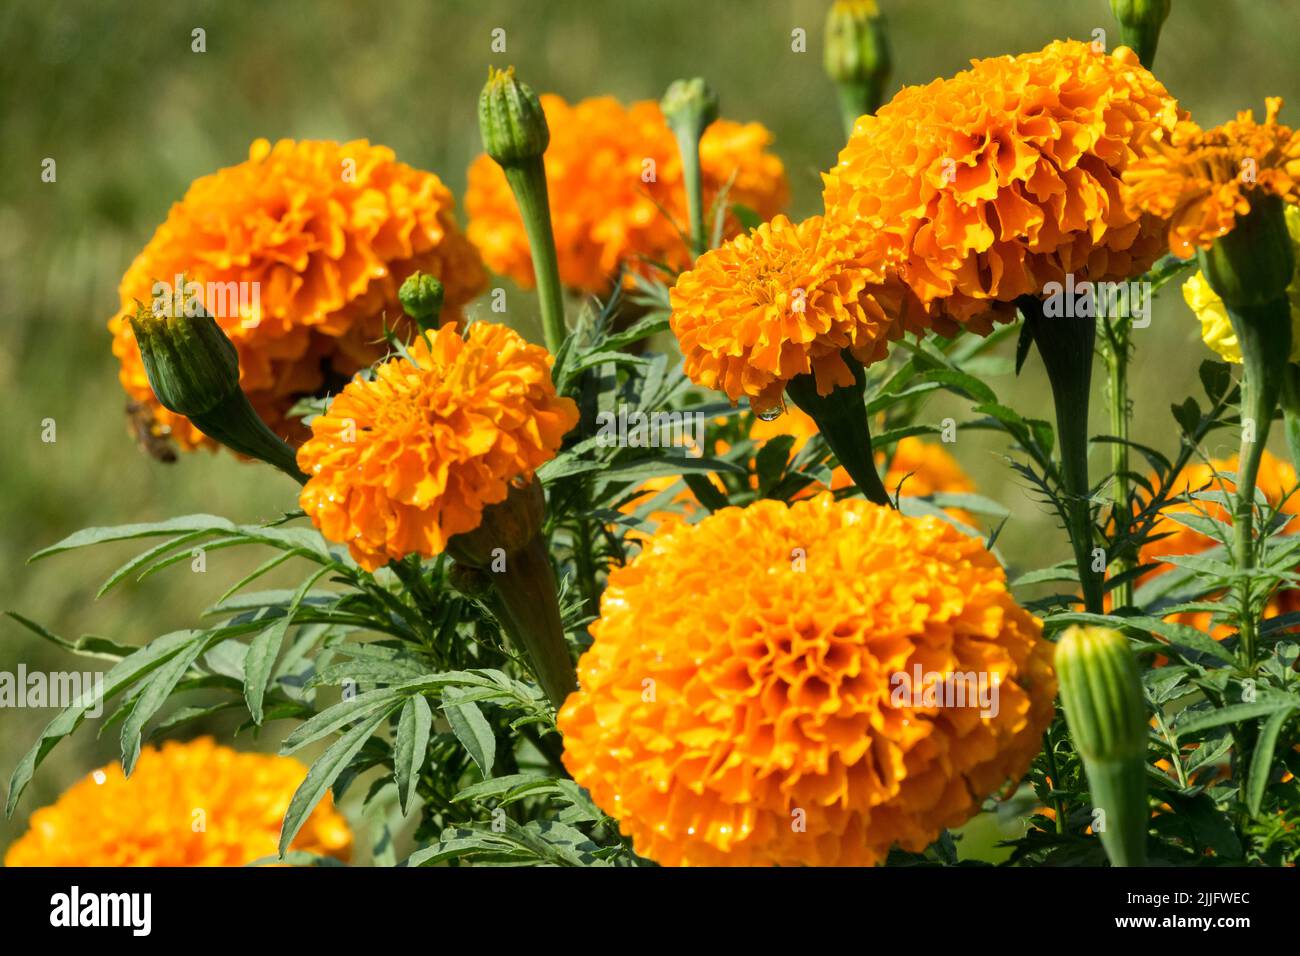 Marigot africain, fleur d'orange, Tagetes erecta, Marigolds, têtes de fleurs, Literie plantes annuelles Tagetes 'Imperial' Banque D'Images